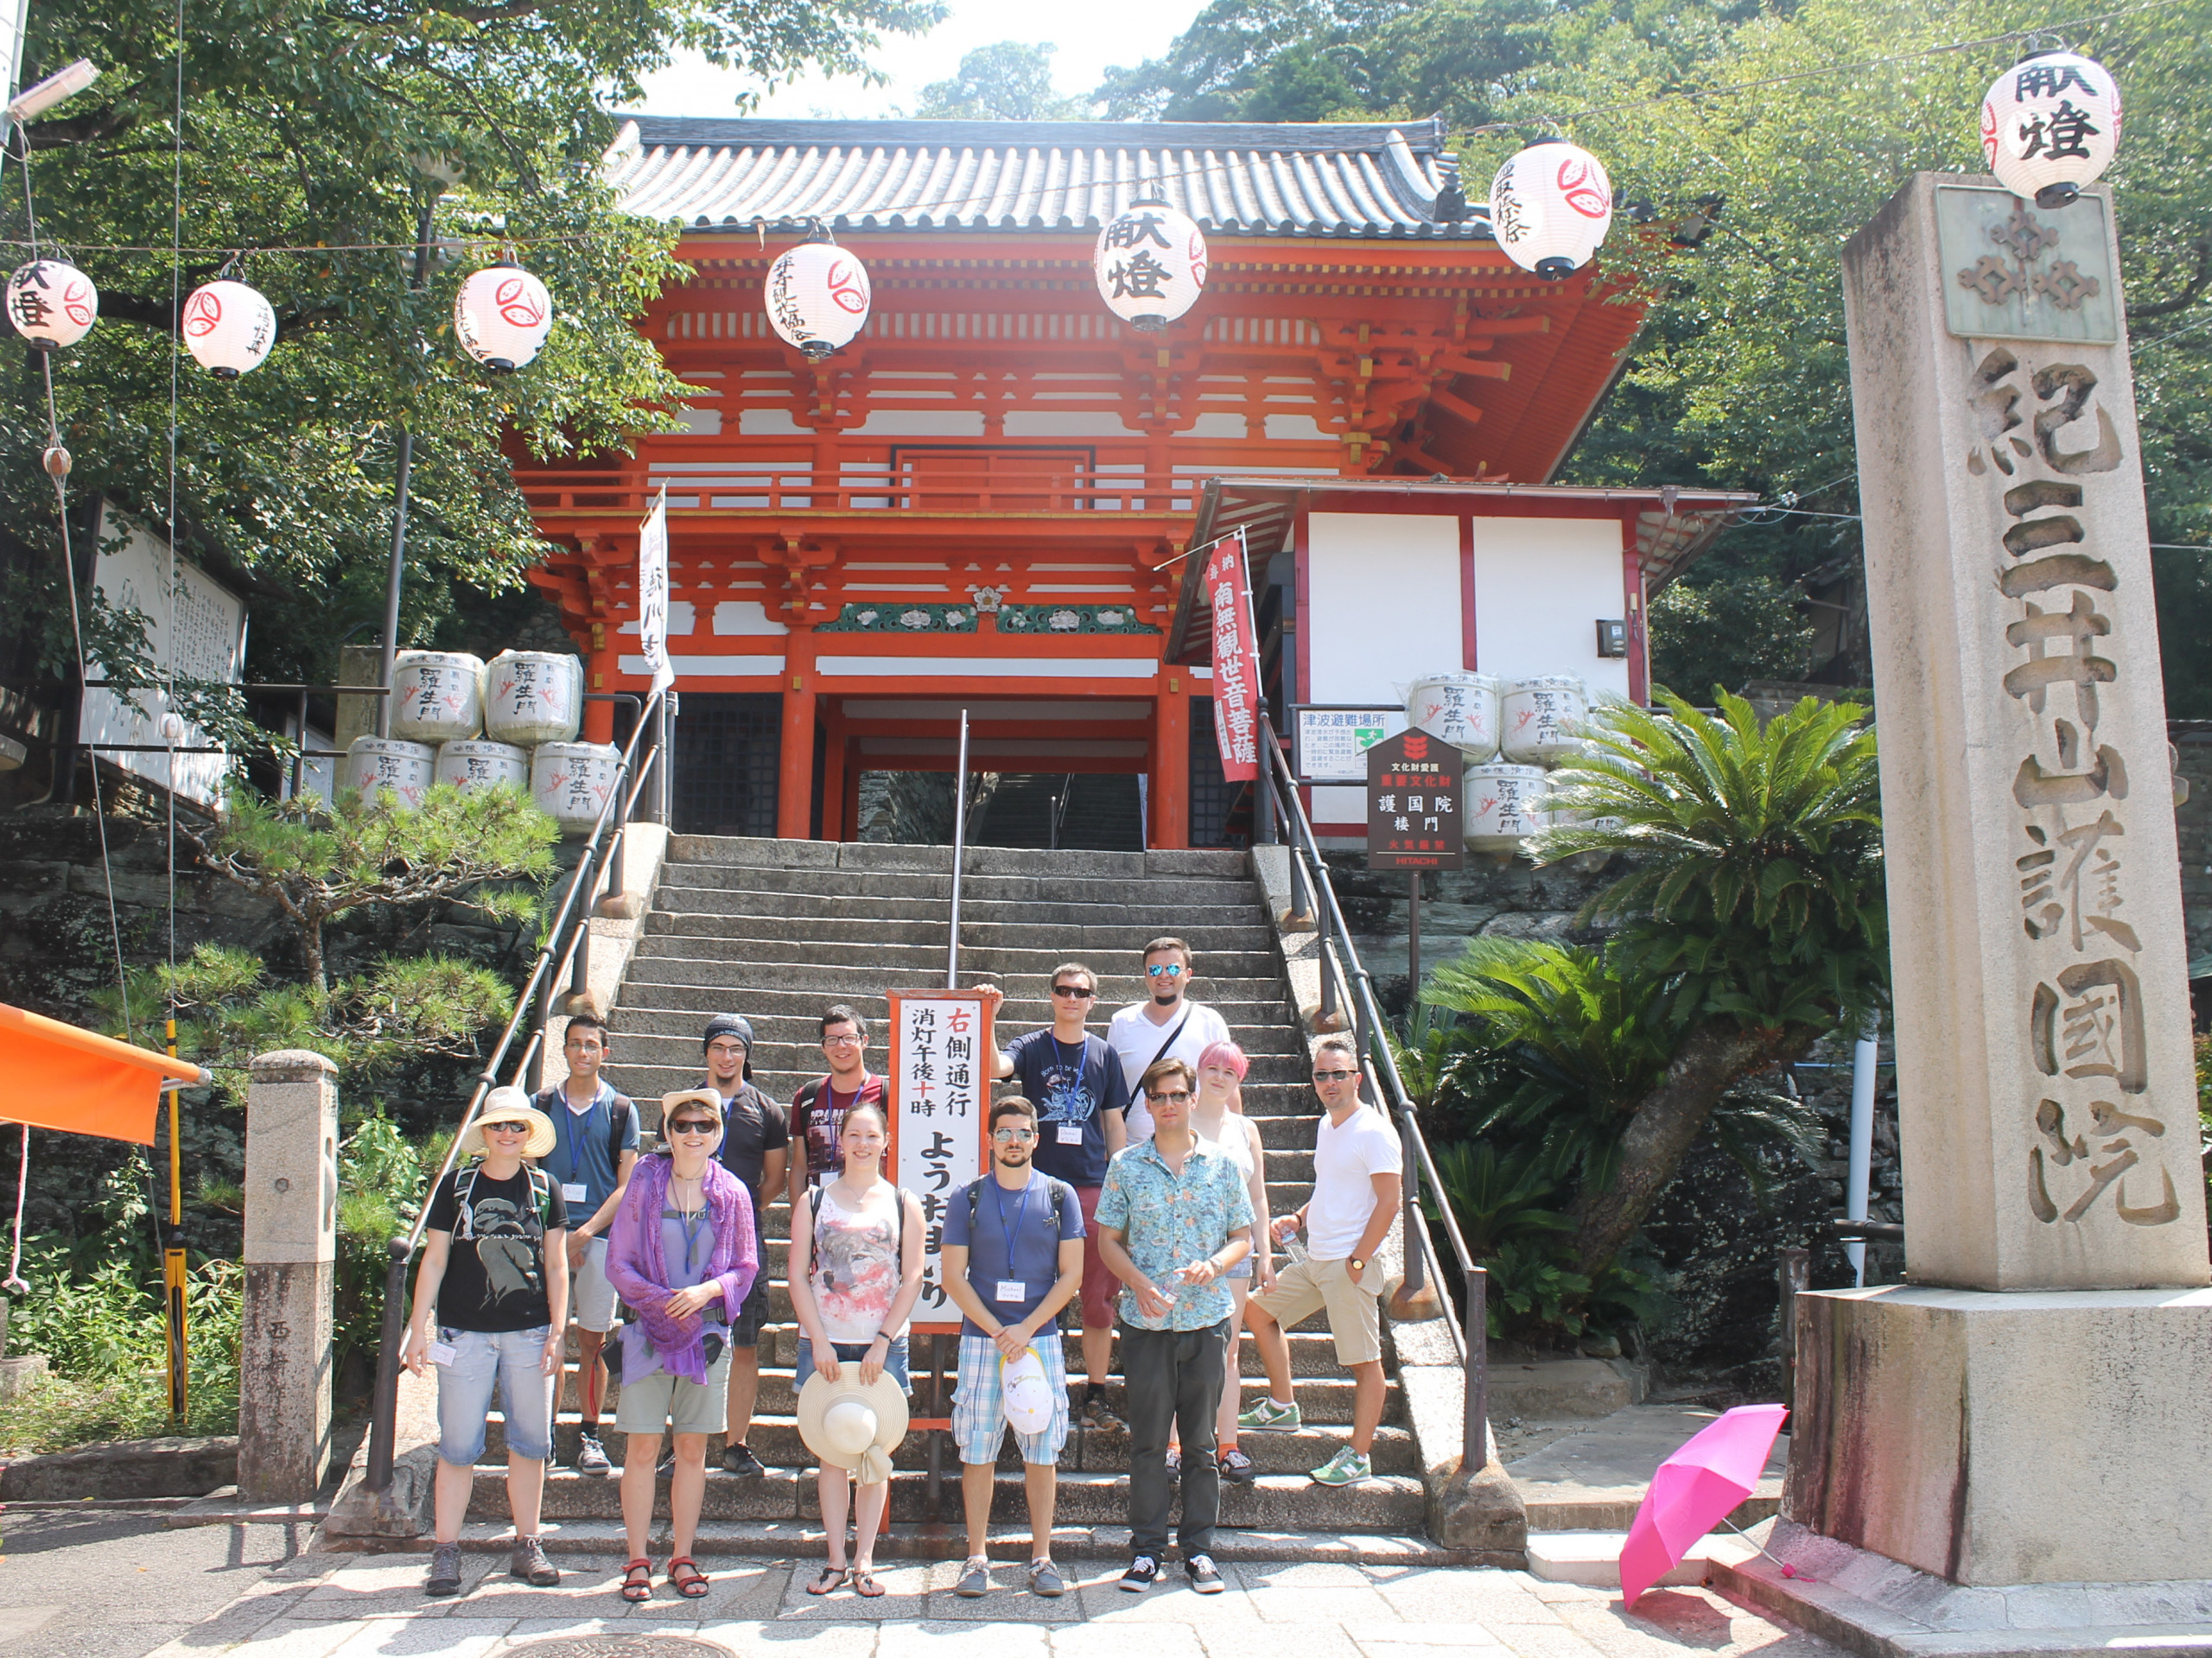 Jugendliche aus Österreich in Japan. Die Gruppe steht vor einem japanischen Tempeleingang.